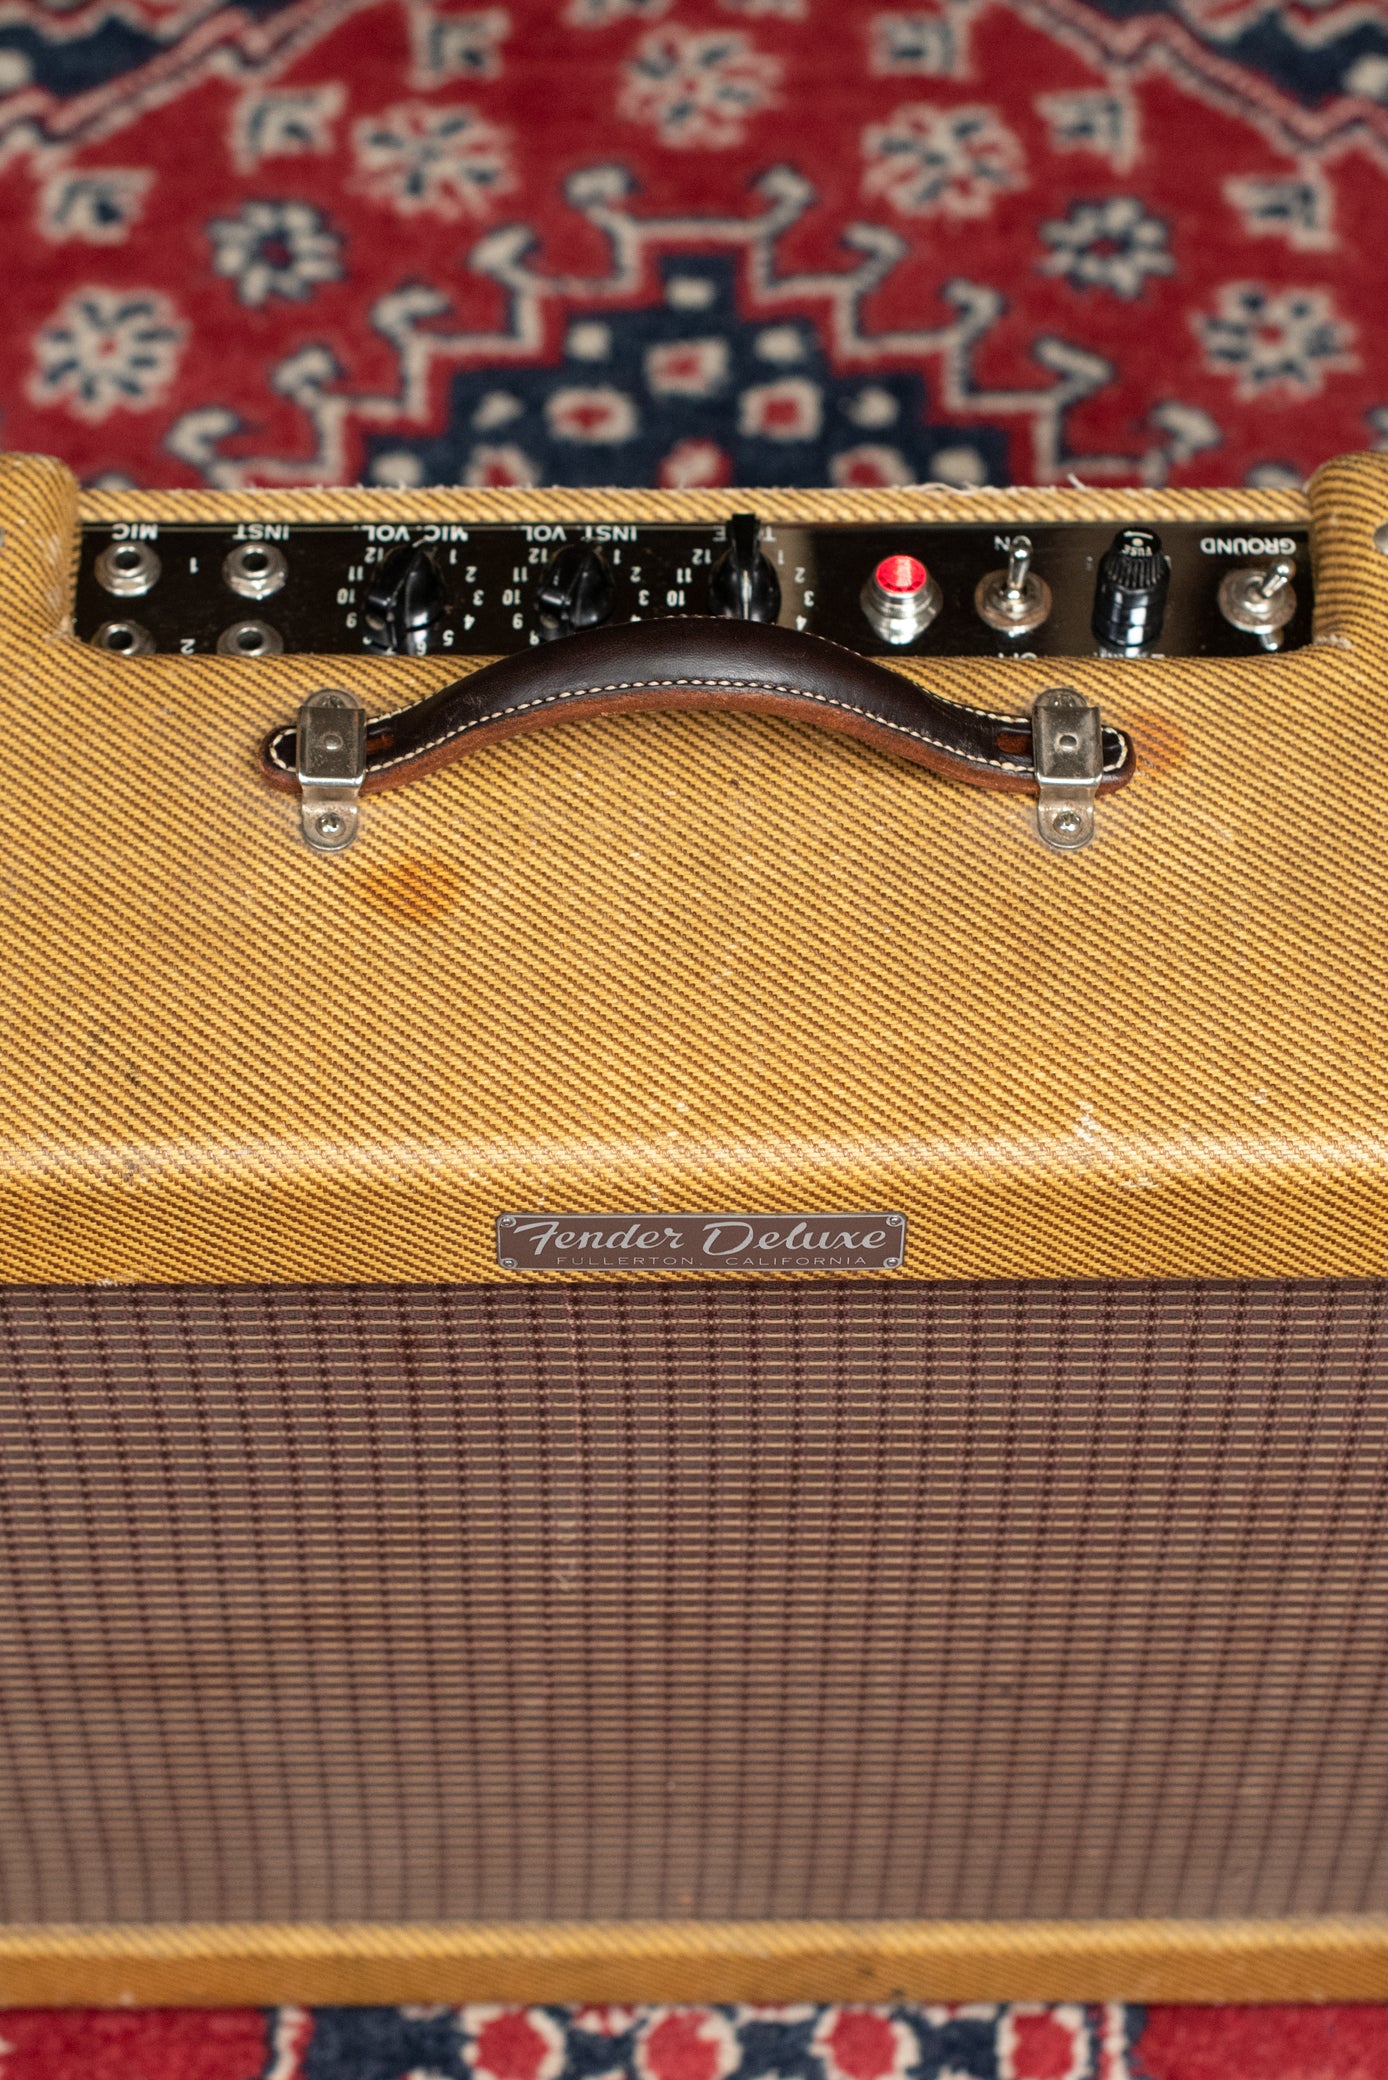 Narrow panel tweed Fender Deluxe 1959